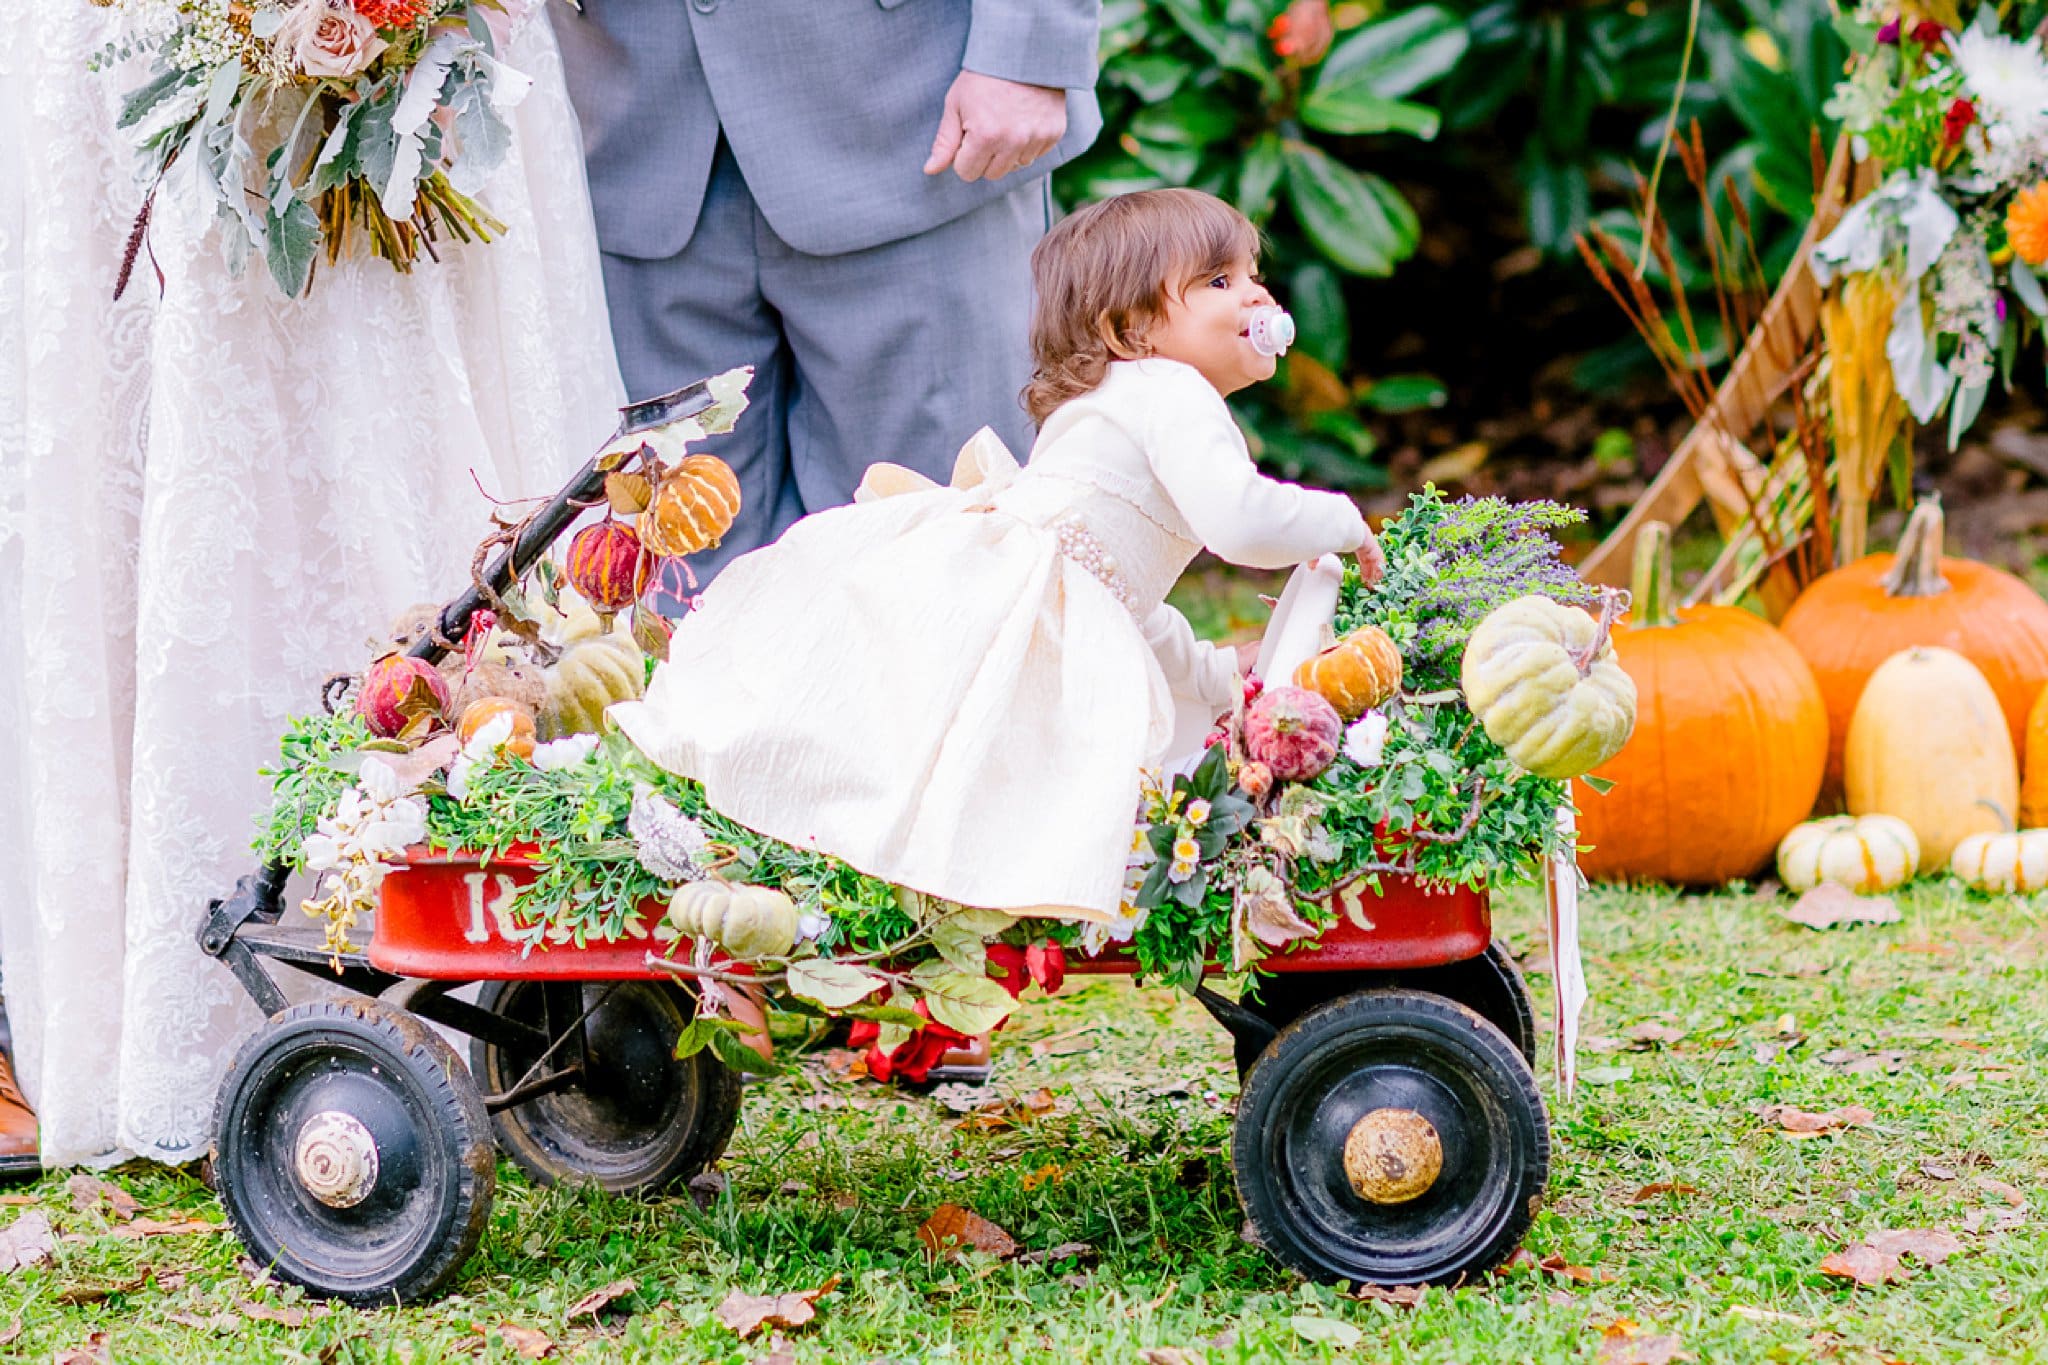 Wedding Wagon Flower Girl